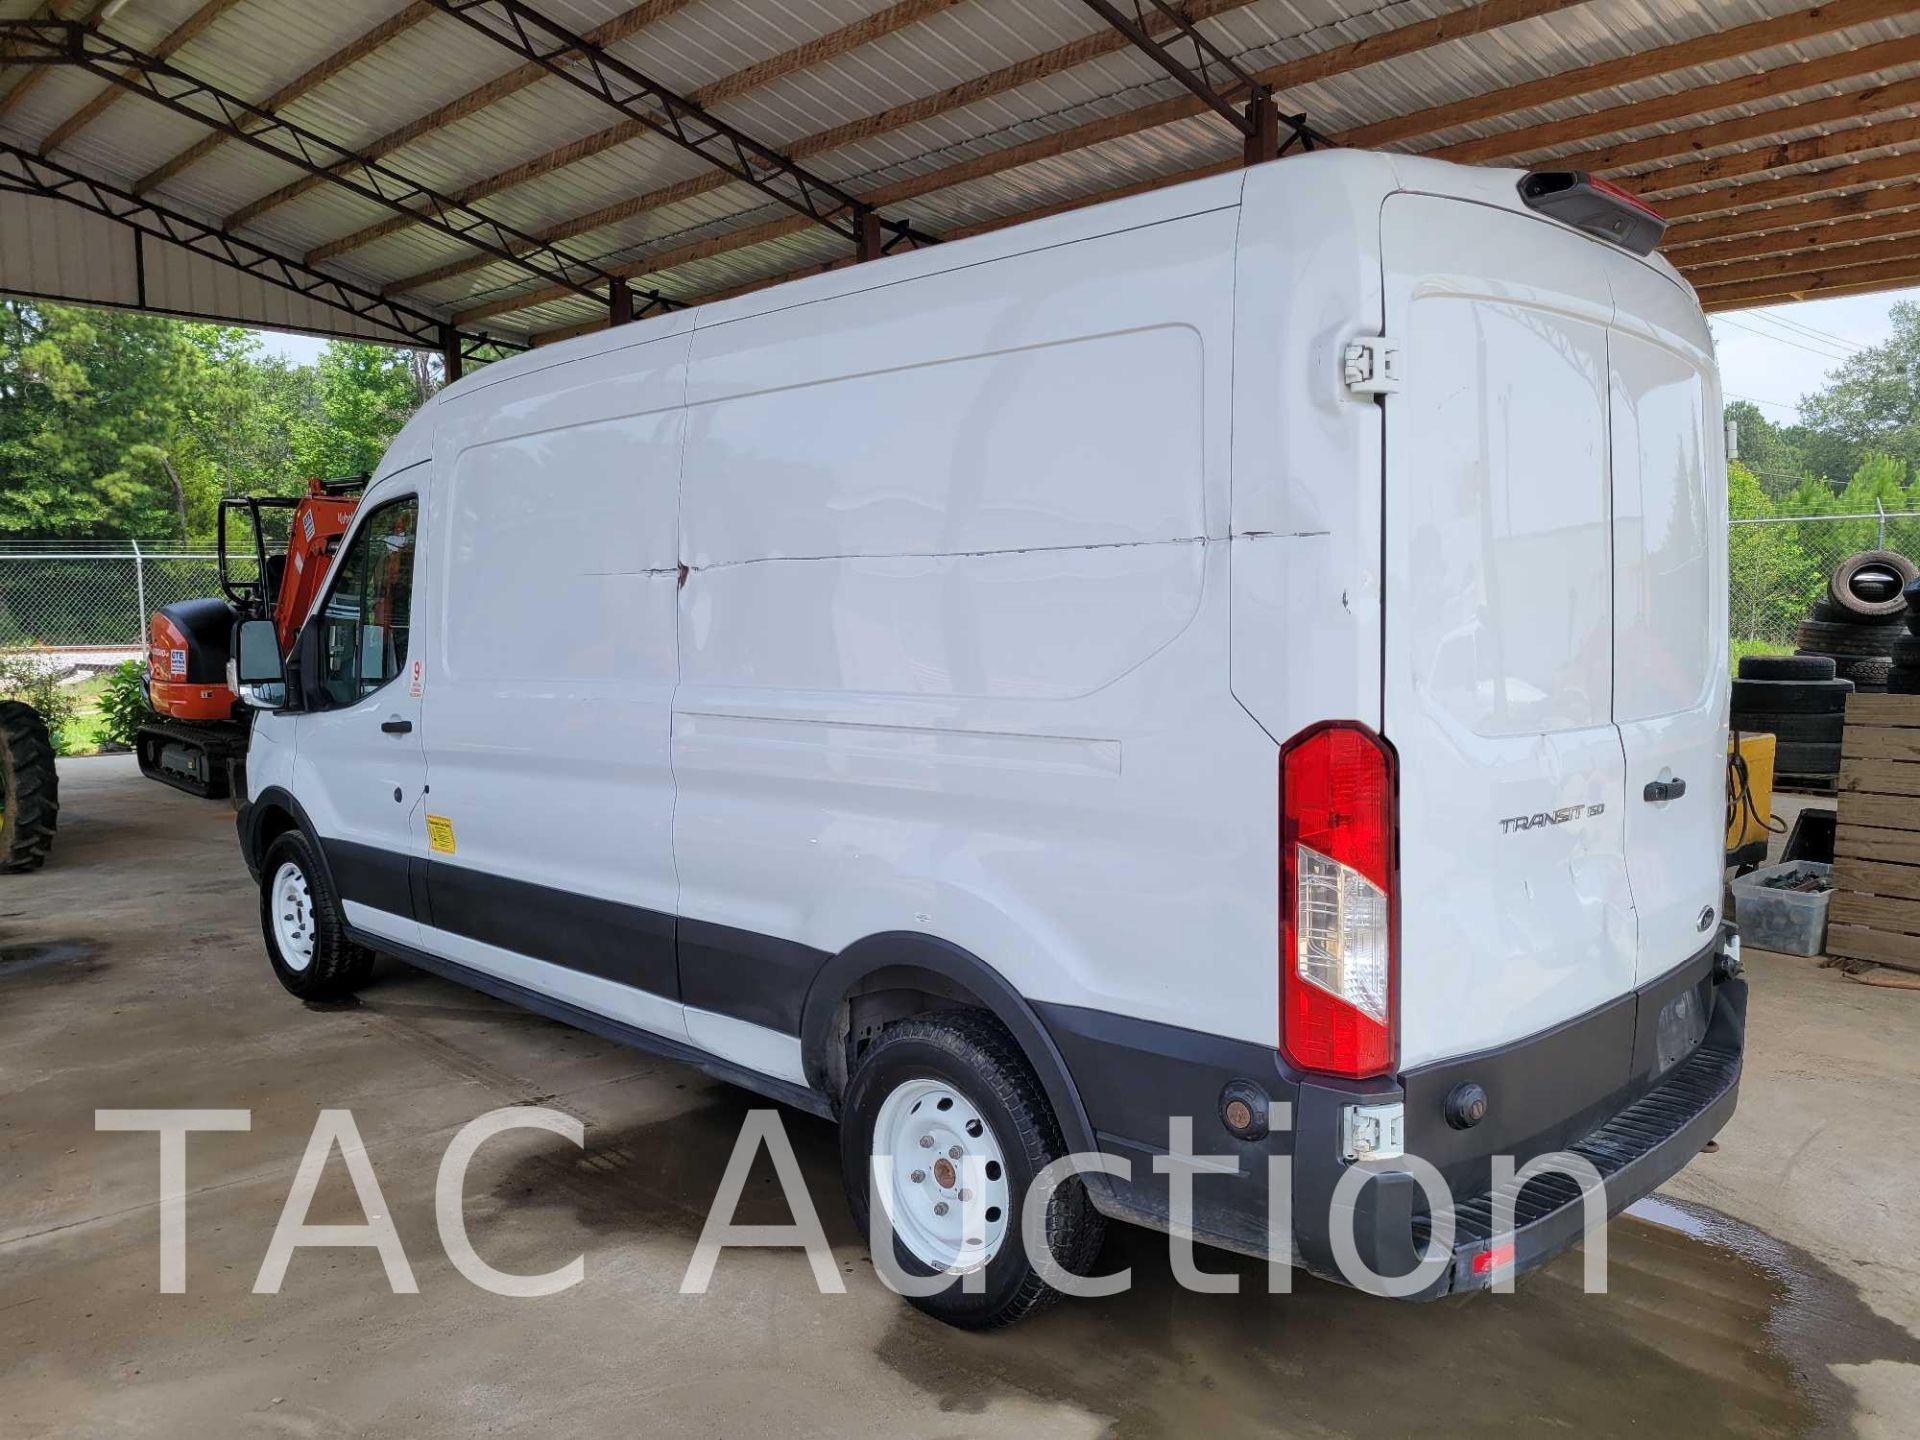 2019 Ford Transit 150 Cargo Van - Image 6 of 46